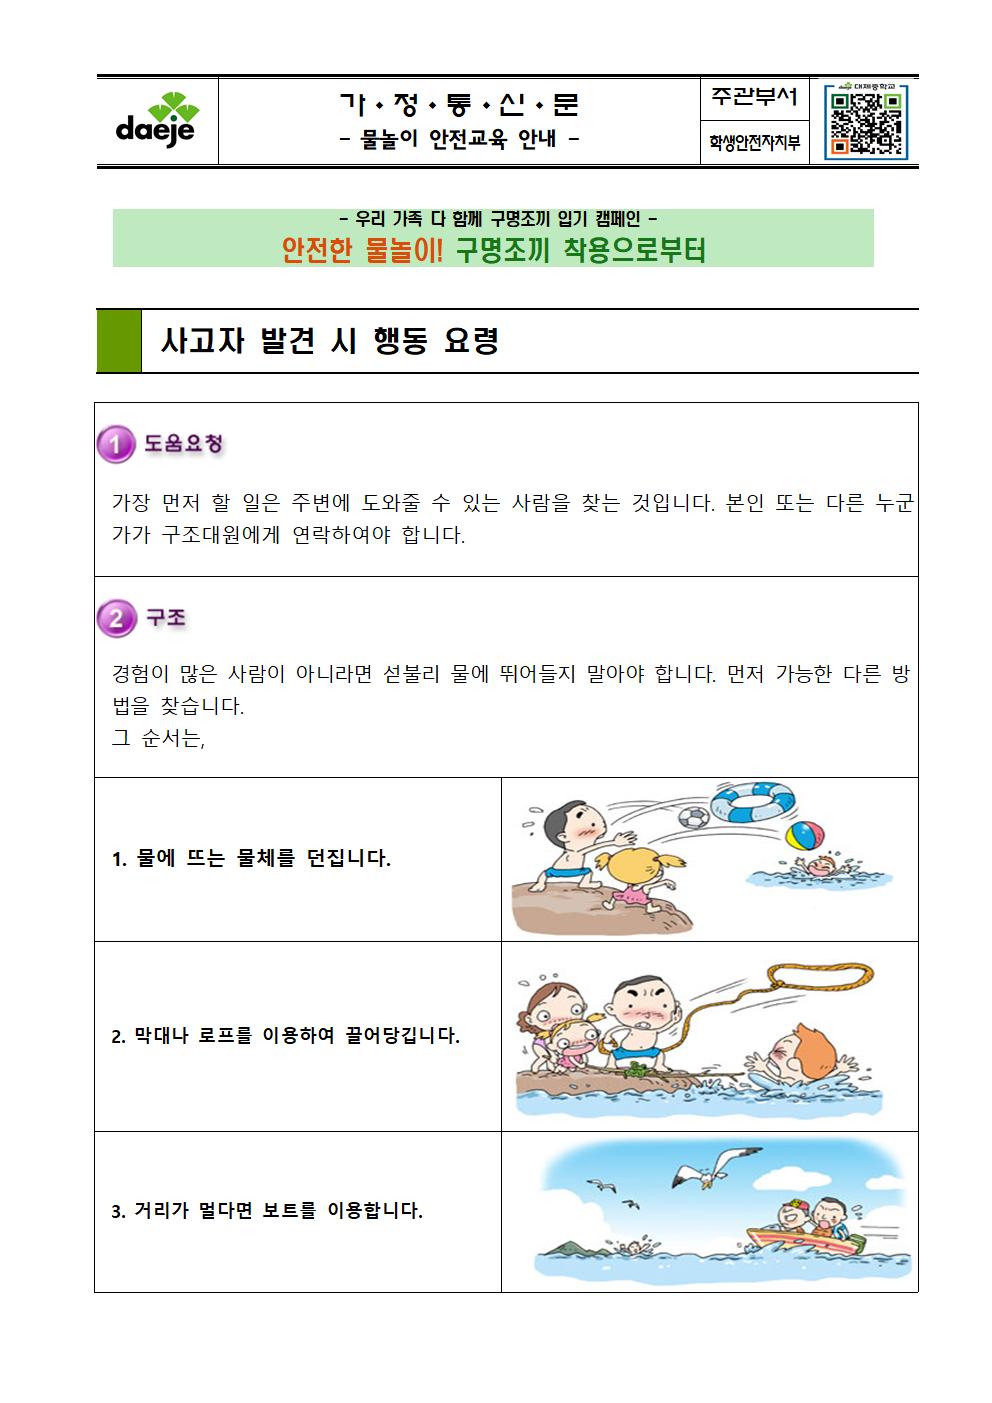 [가정통신문] 물놀이 안전교육 안내(1)